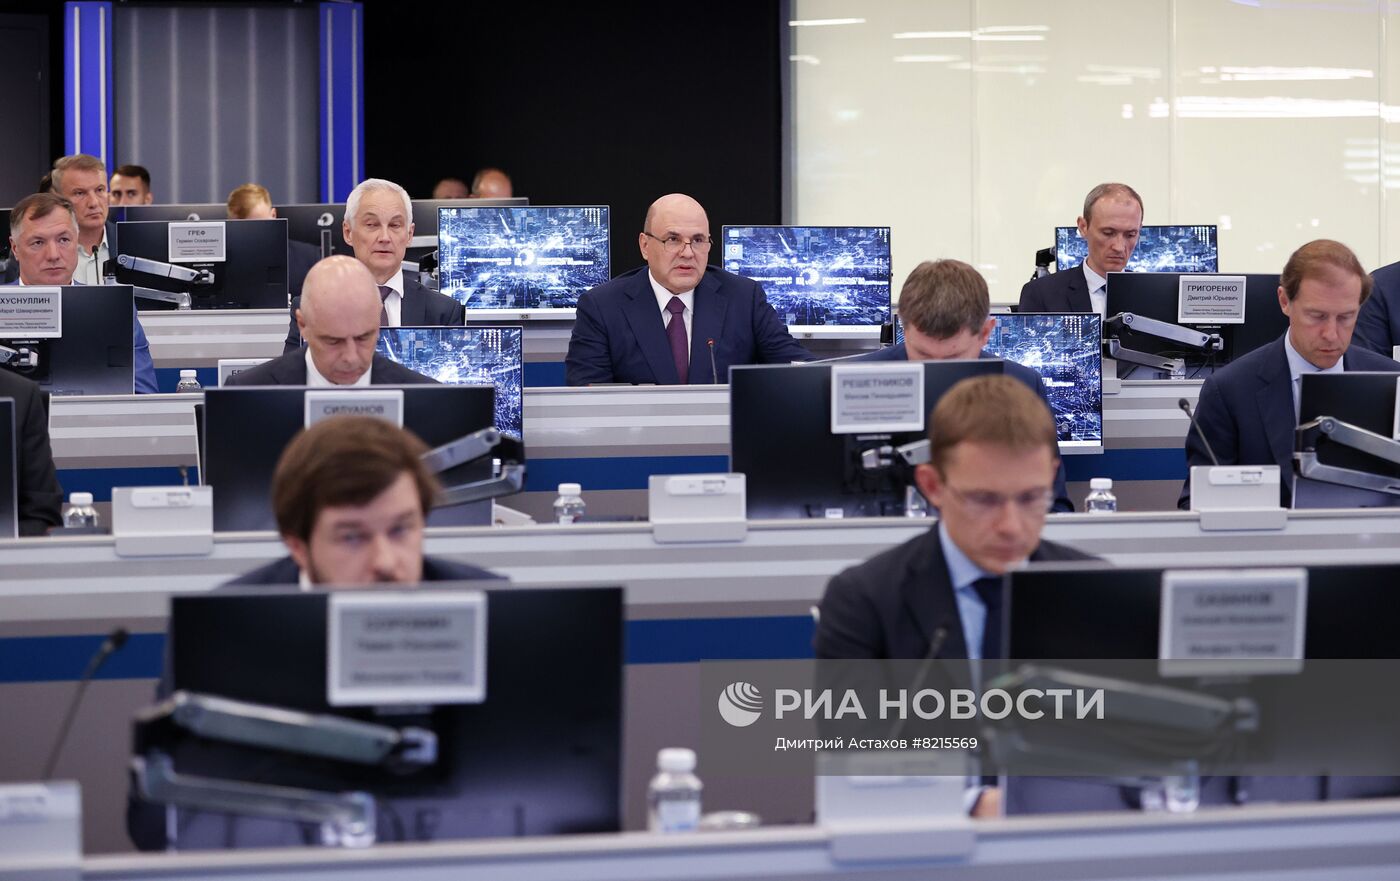 Премьер-министр РФ М. Мишустин принял участие в стратегической сессии по экономической политике в условиях санкций